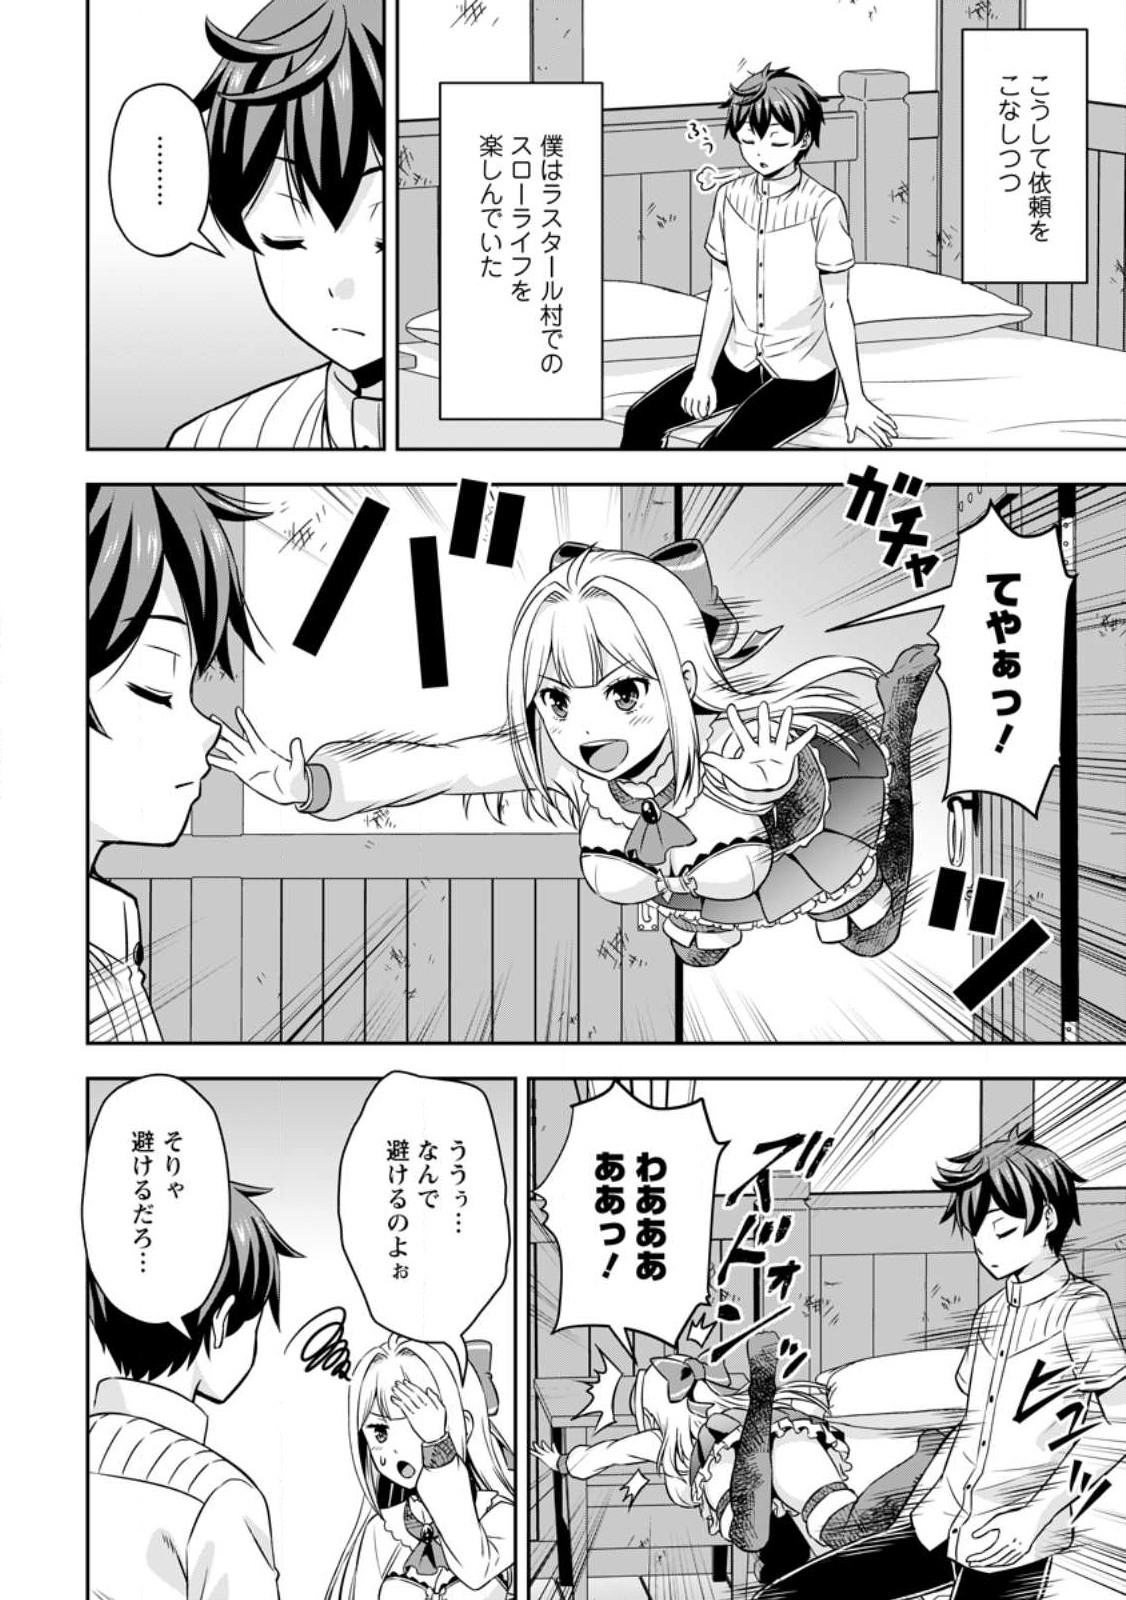 Oi, Hazure Skill dato Omowareteita Cheat Code Sousa ga Bakemono Sugiru ndaga (Tomokichi) - Chapter 8 - Page 1